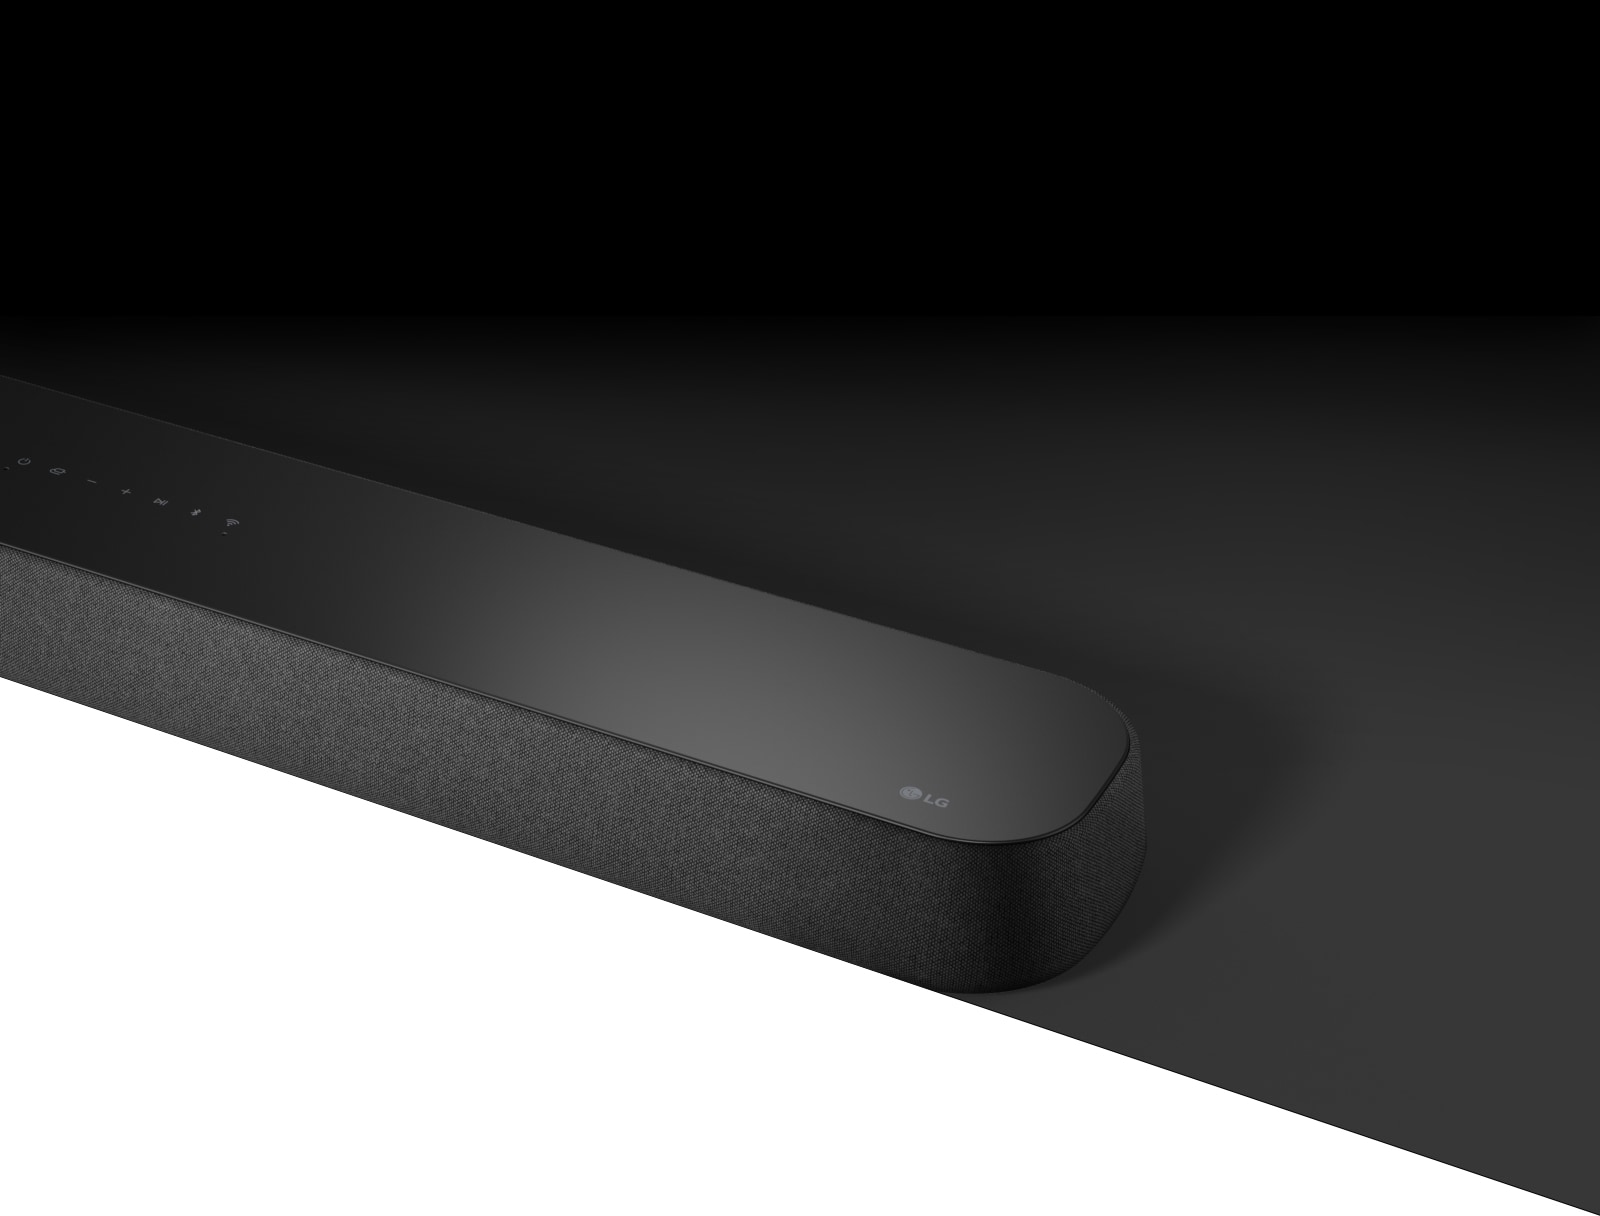 Die LG Soundbar DSE6S mit diagonaler Ansicht ist auf einer schwarzen Fläche platziert und darunter befindet sich eine weiße Fläche für Designzwecke.